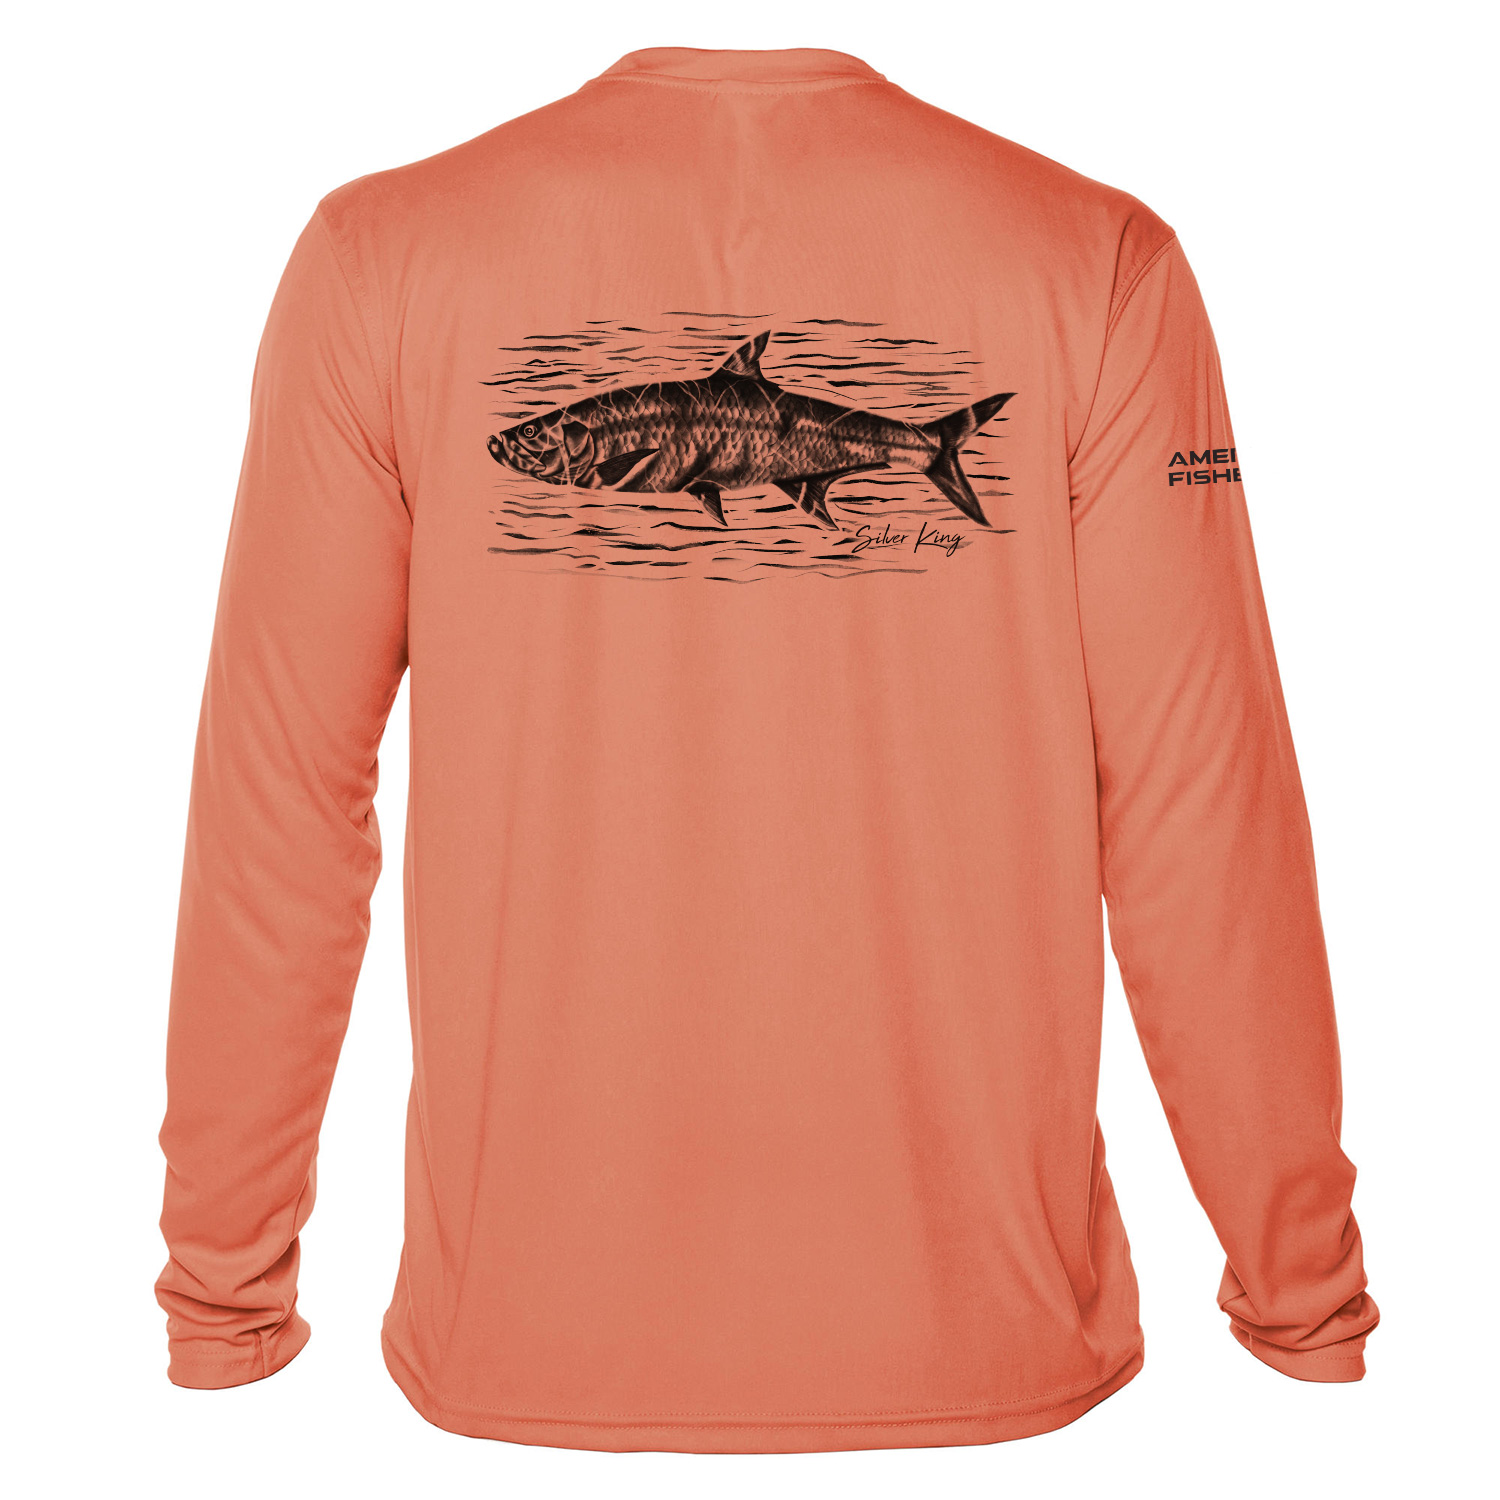 American Fisherman Men's Silver King Fishing Sun Shirt